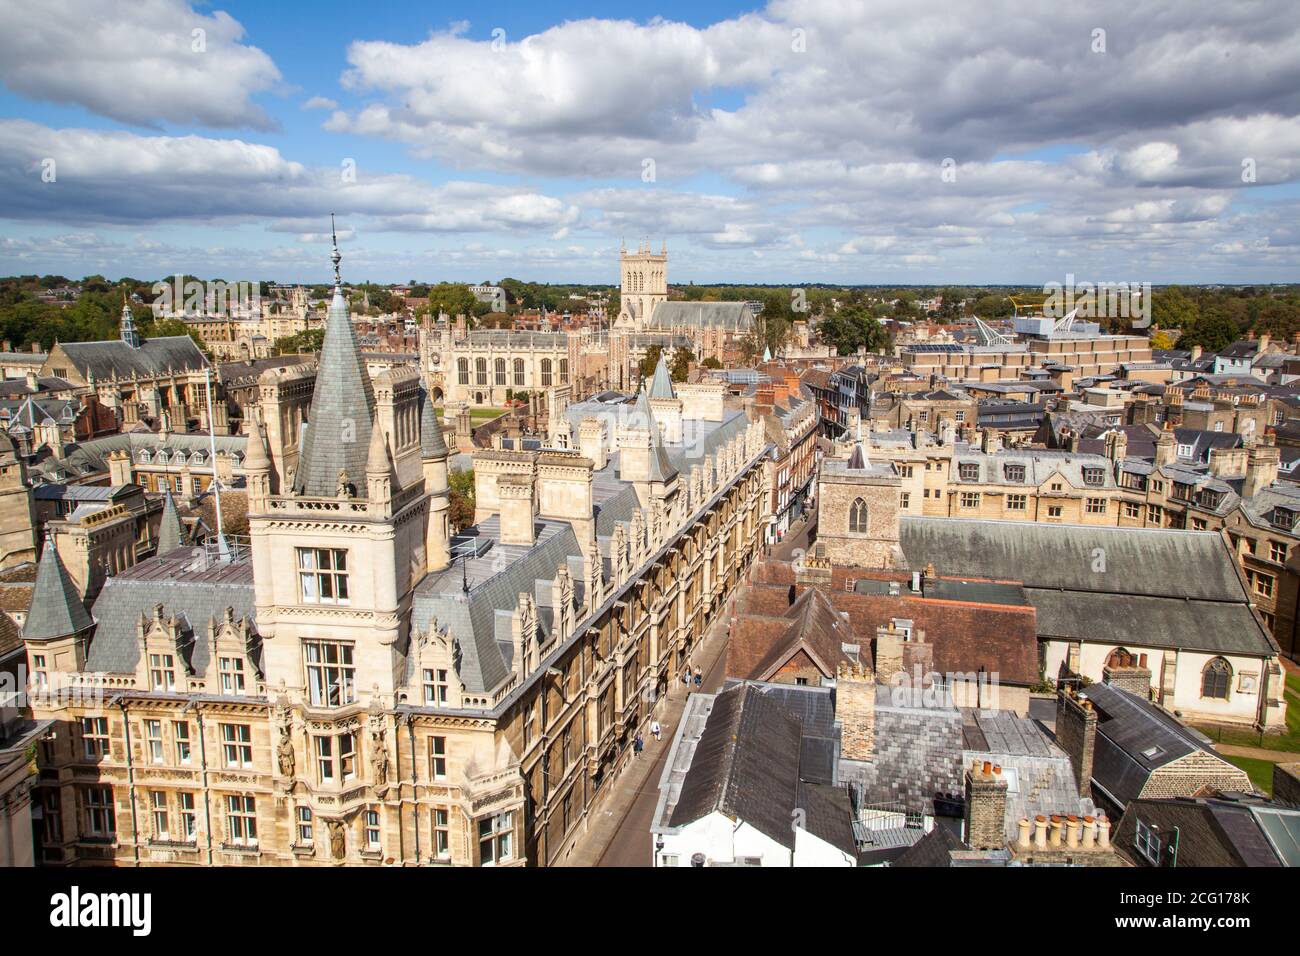 Vista aérea desde arriba de las iglesias históricas de los collages y edificios universitarios de la ciudad de Cambridge, tomada de la torre de la Iglesia de Santa María Foto de stock